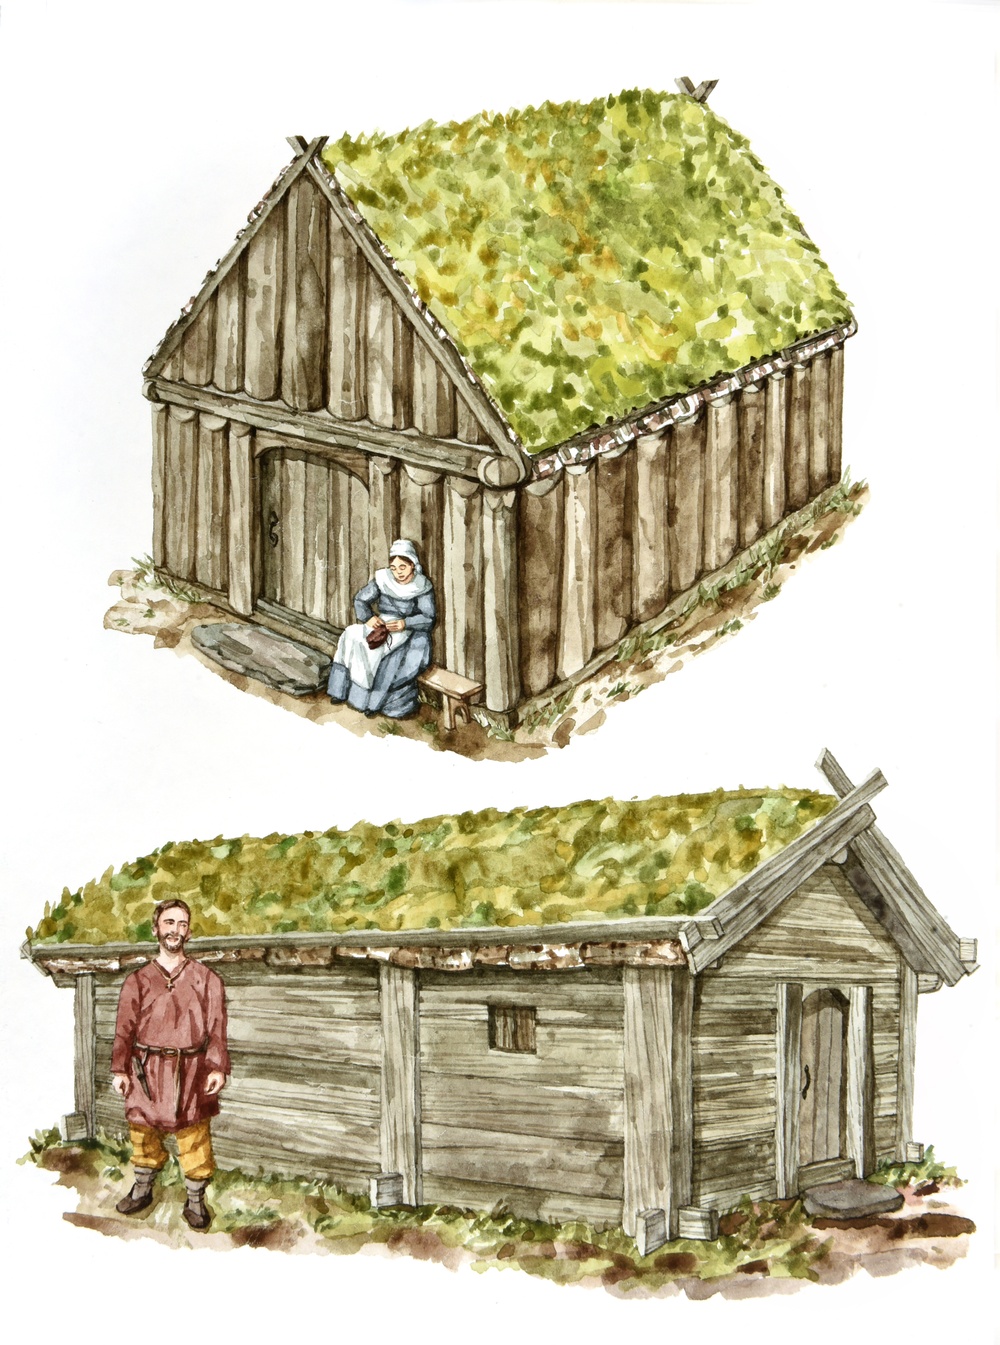 Överst: Hus byggt i resvirkesteknik. 
Nederst: Hus byggt i skiftesverk.
Akvarell av Olle Ekström.  
